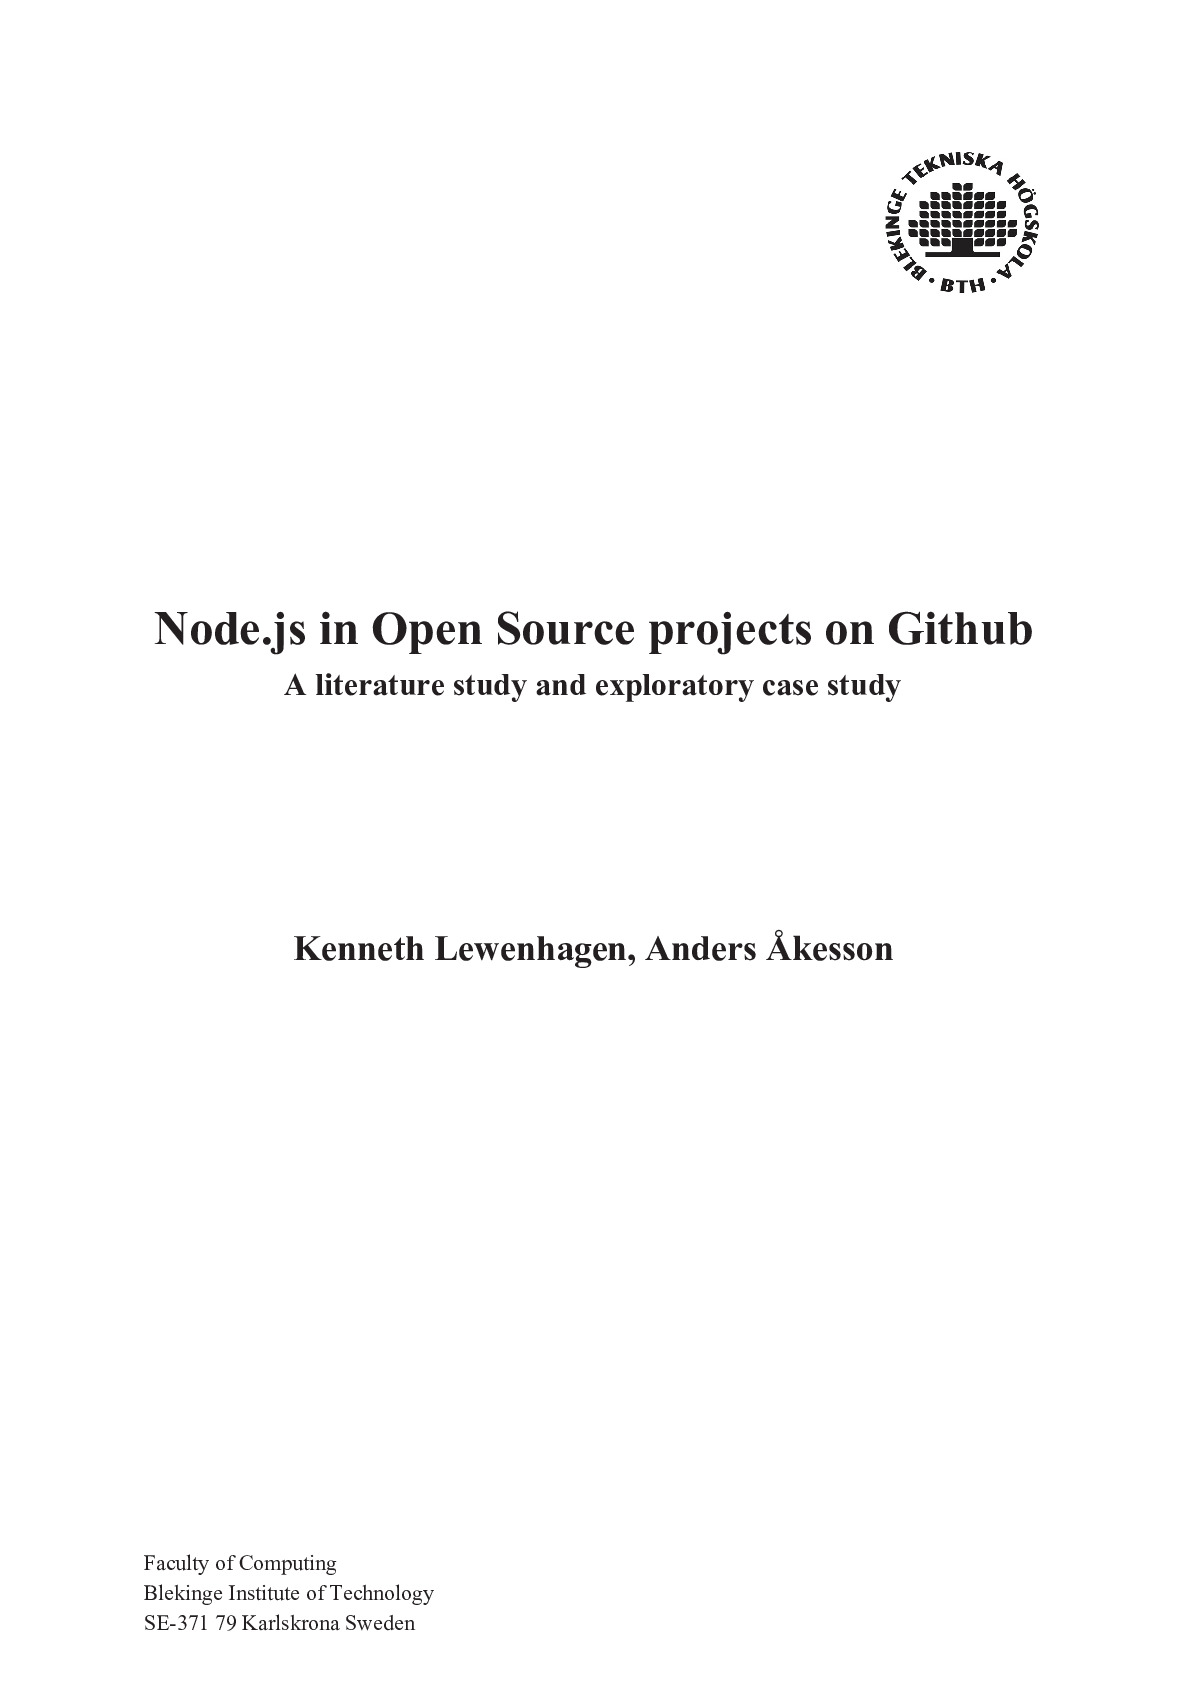 Kenneth Lewenhagen, Anders Åkesson – Node.js in Open Source projects on Github